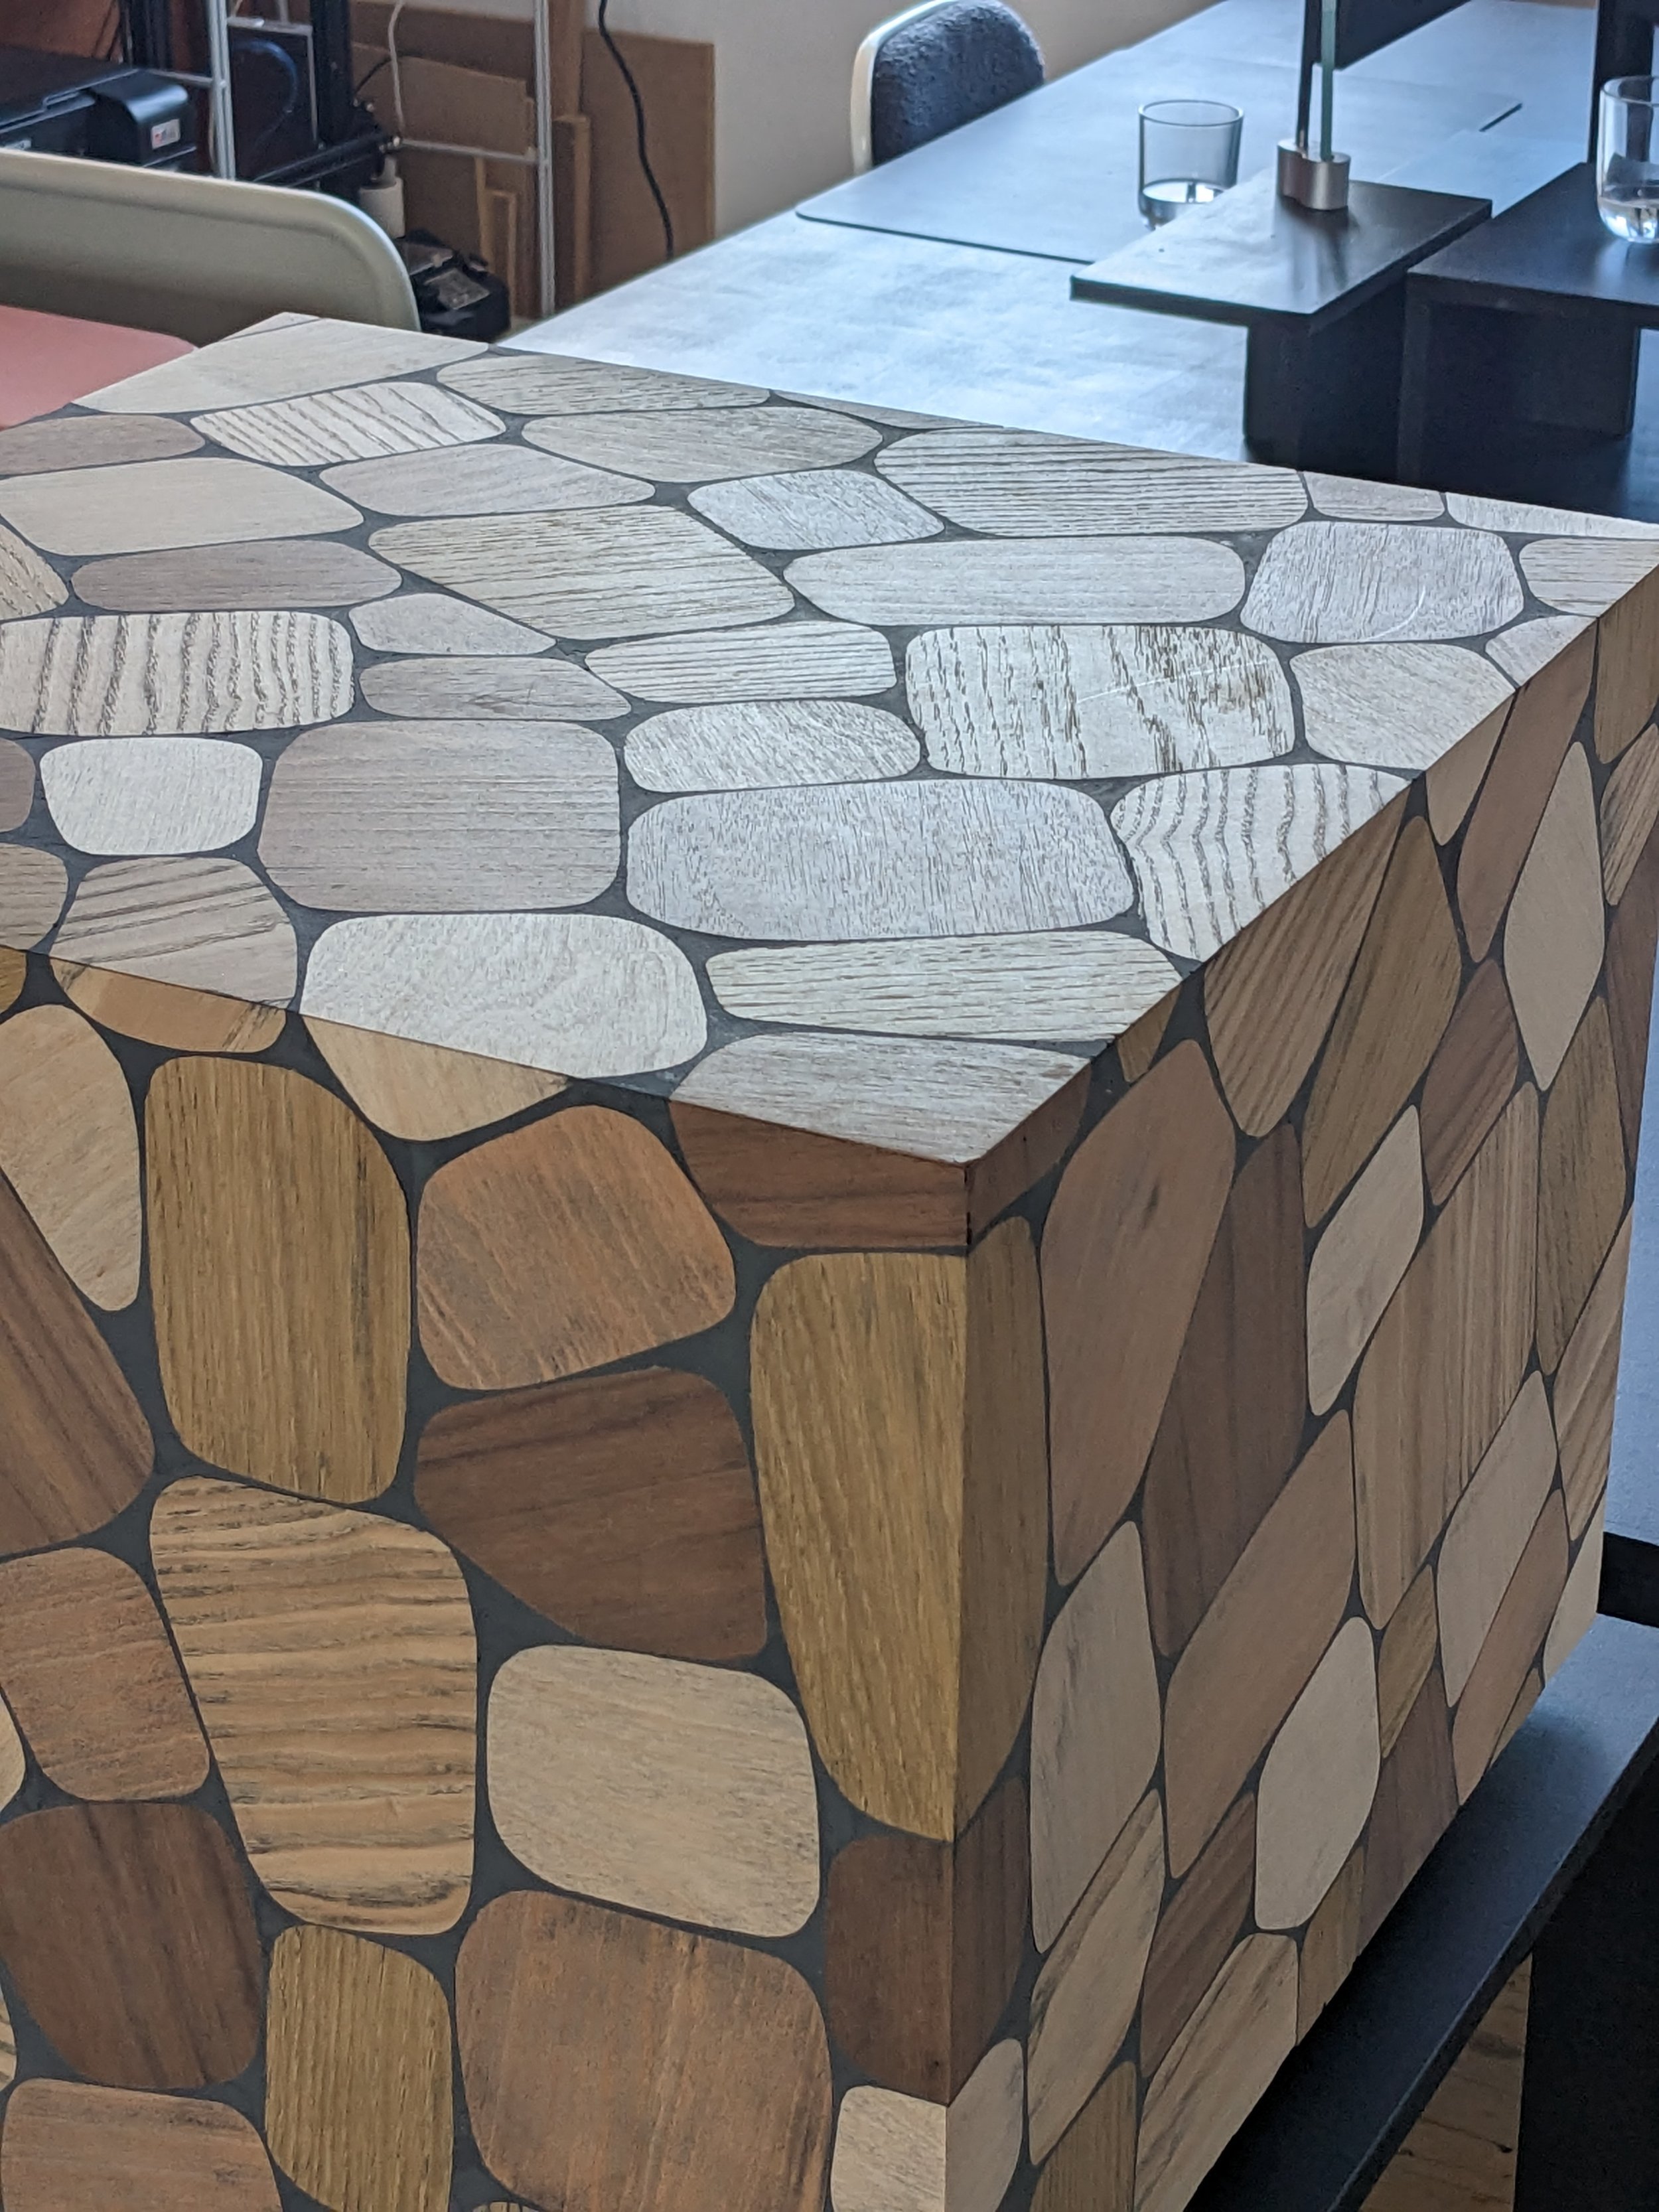 woodstone / surface